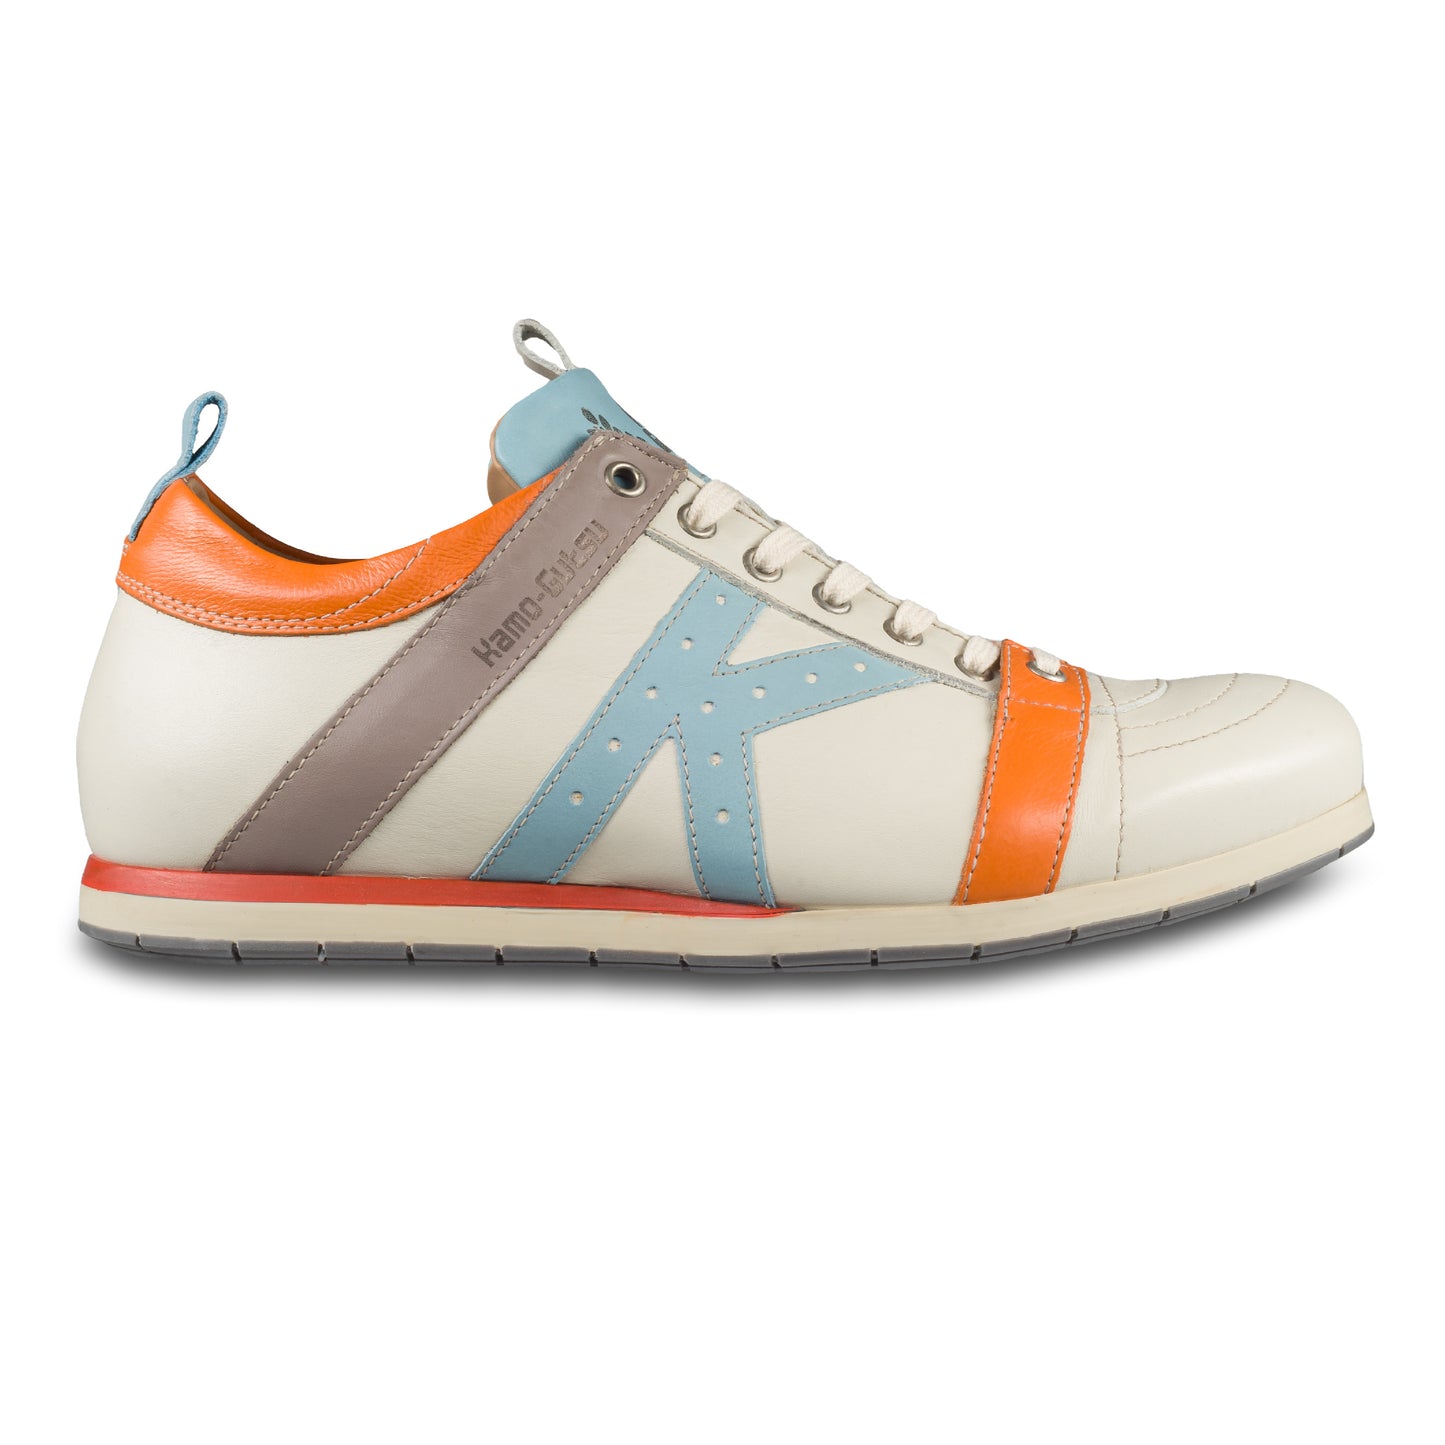 KAMO-GUTSU-Italienischer-Herren-Leder-Sneaker-weiss-orange-blau-grau-TIFO-042-bianco-cielo-handgefertigt. Ansicht der Außenseite rechter Schuh. 